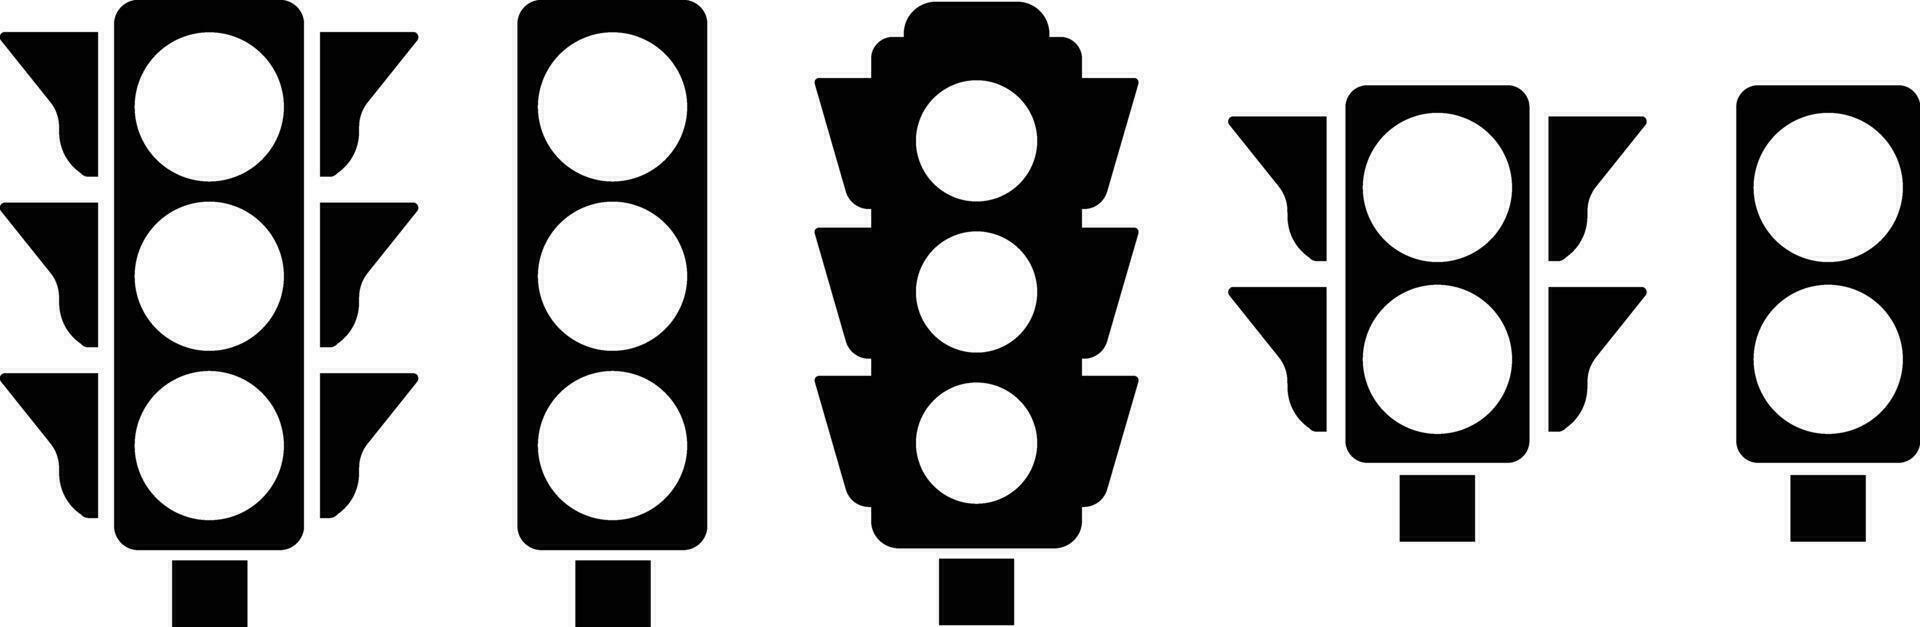 der Verkehr Licht Schnittstelle Symbol im eben Satz. isoliert im Symbol verwenden zum der Verkehr Steuerung oder Ampel mit gehen Licht und Vorsicht Licht im Vektor zum Apps und Webseite